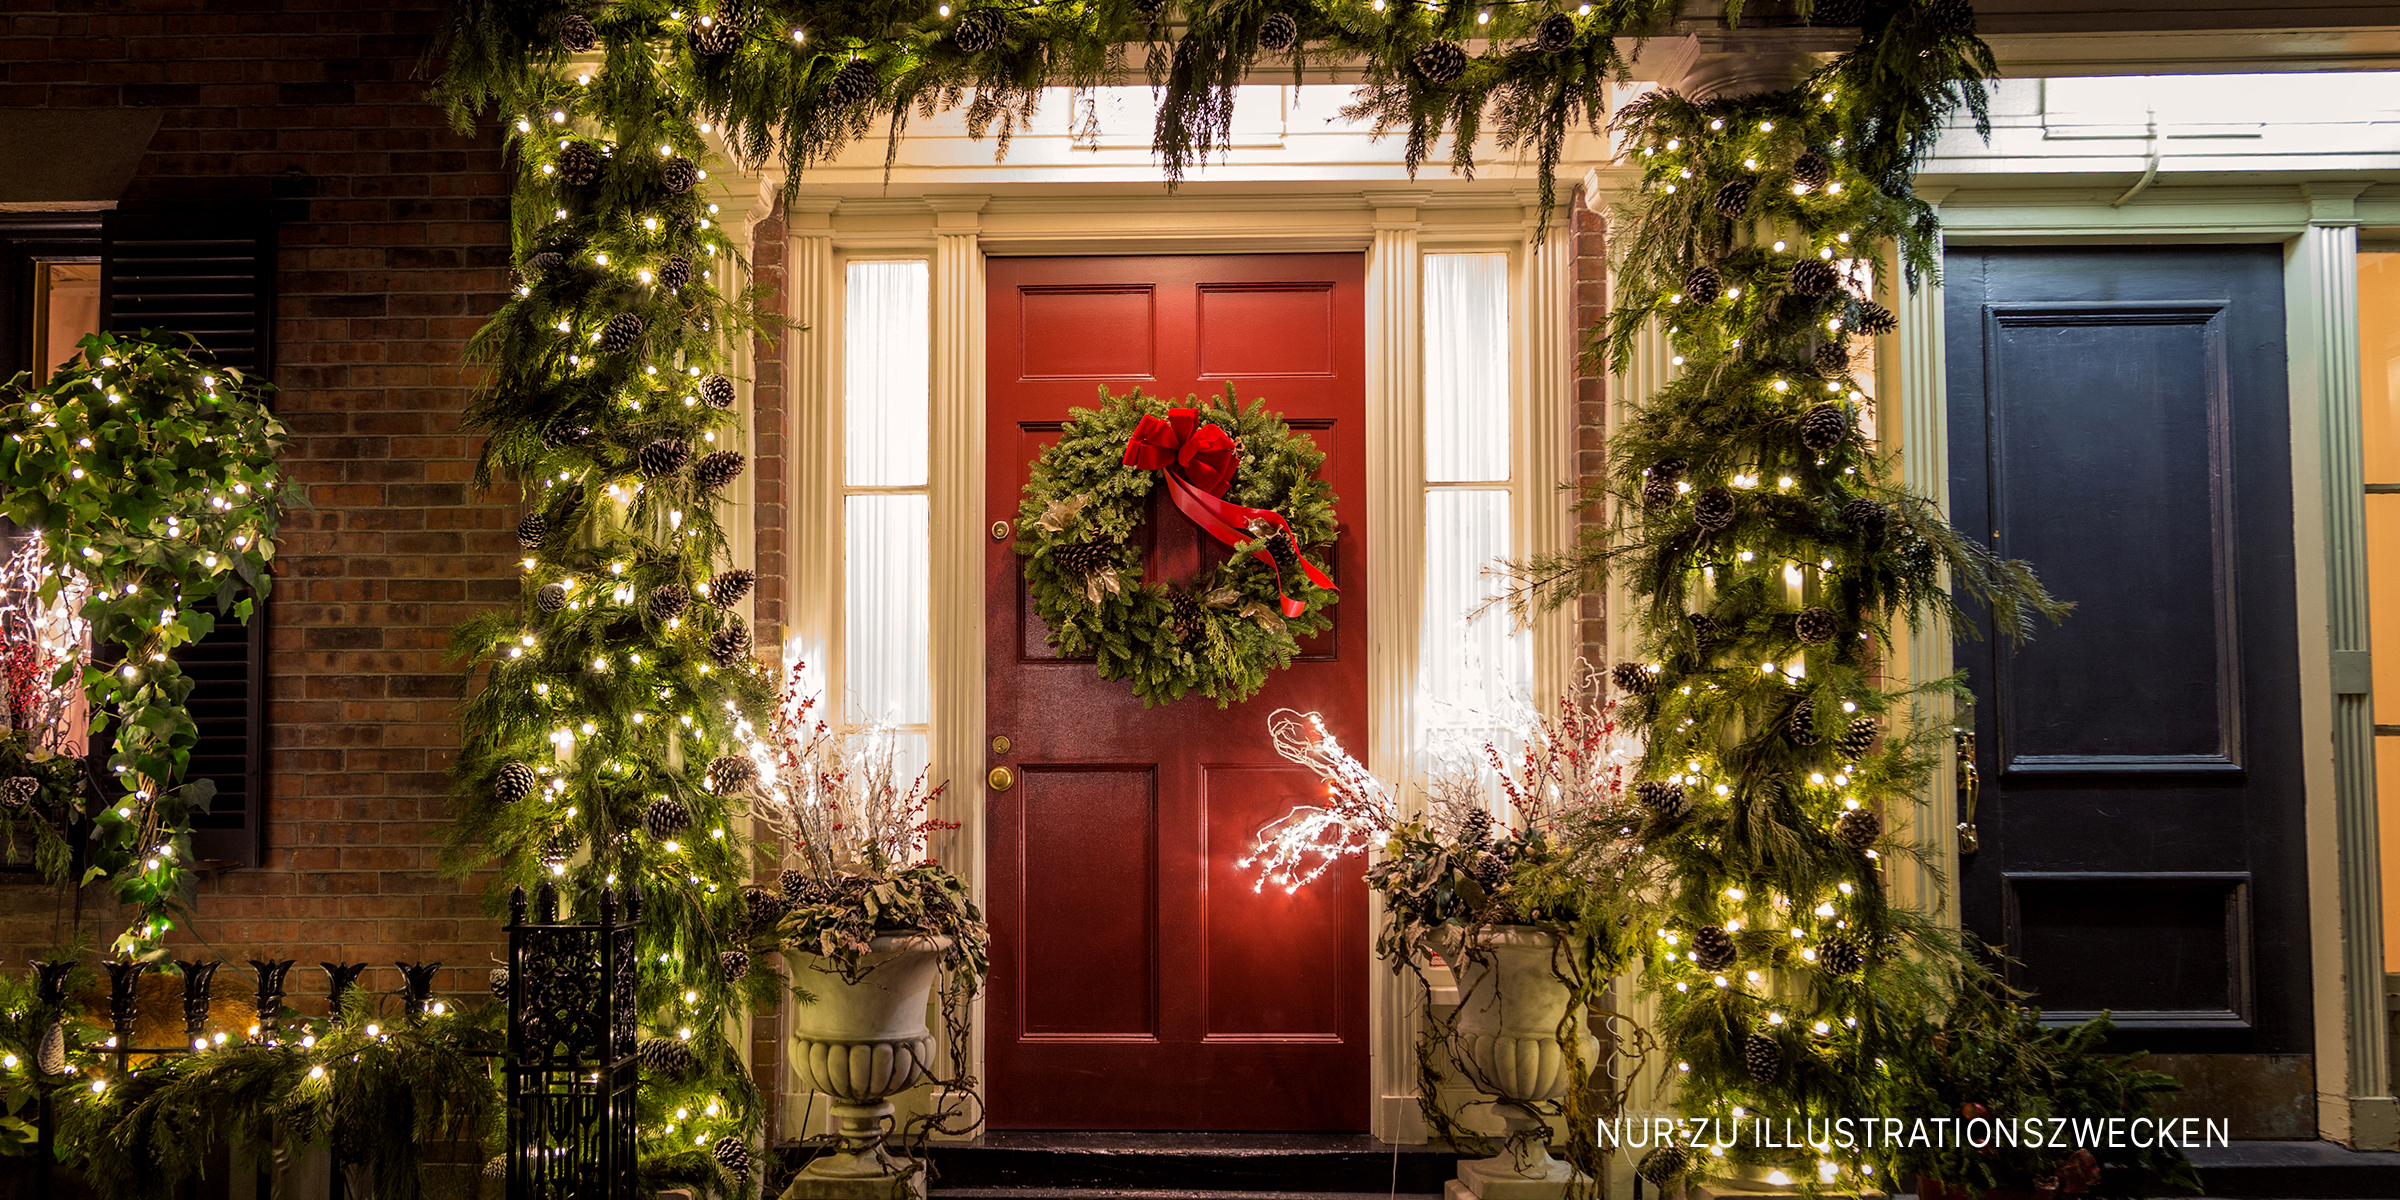 Ein mit Weihnachtsdekoration geschmücktes Haus | Quelle: Shutterstock